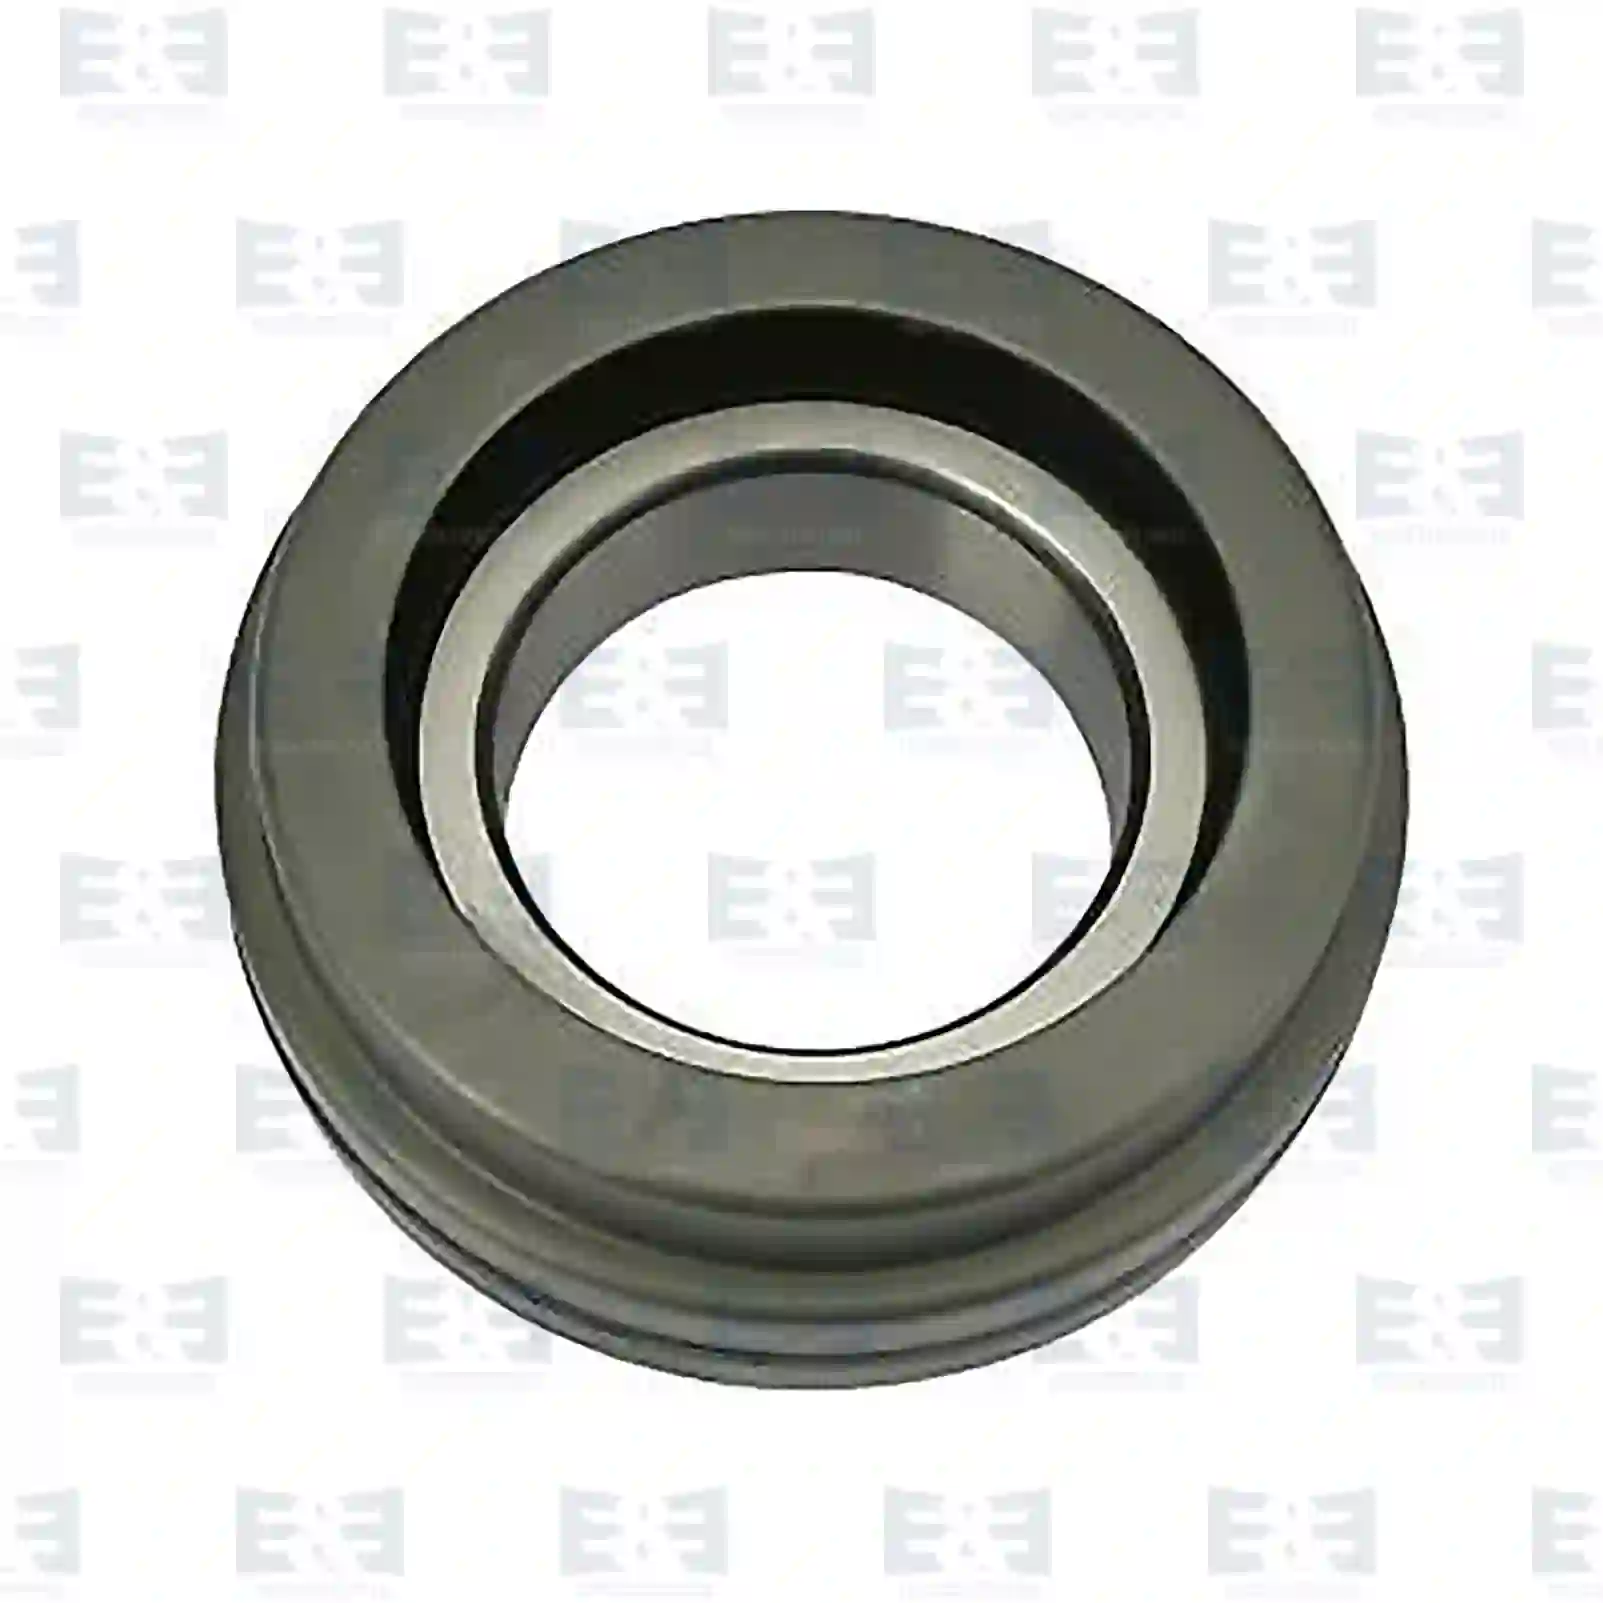  Ball bearing, center bearing || E&E Truck Spare Parts | Truck Spare Parts, Auotomotive Spare Parts